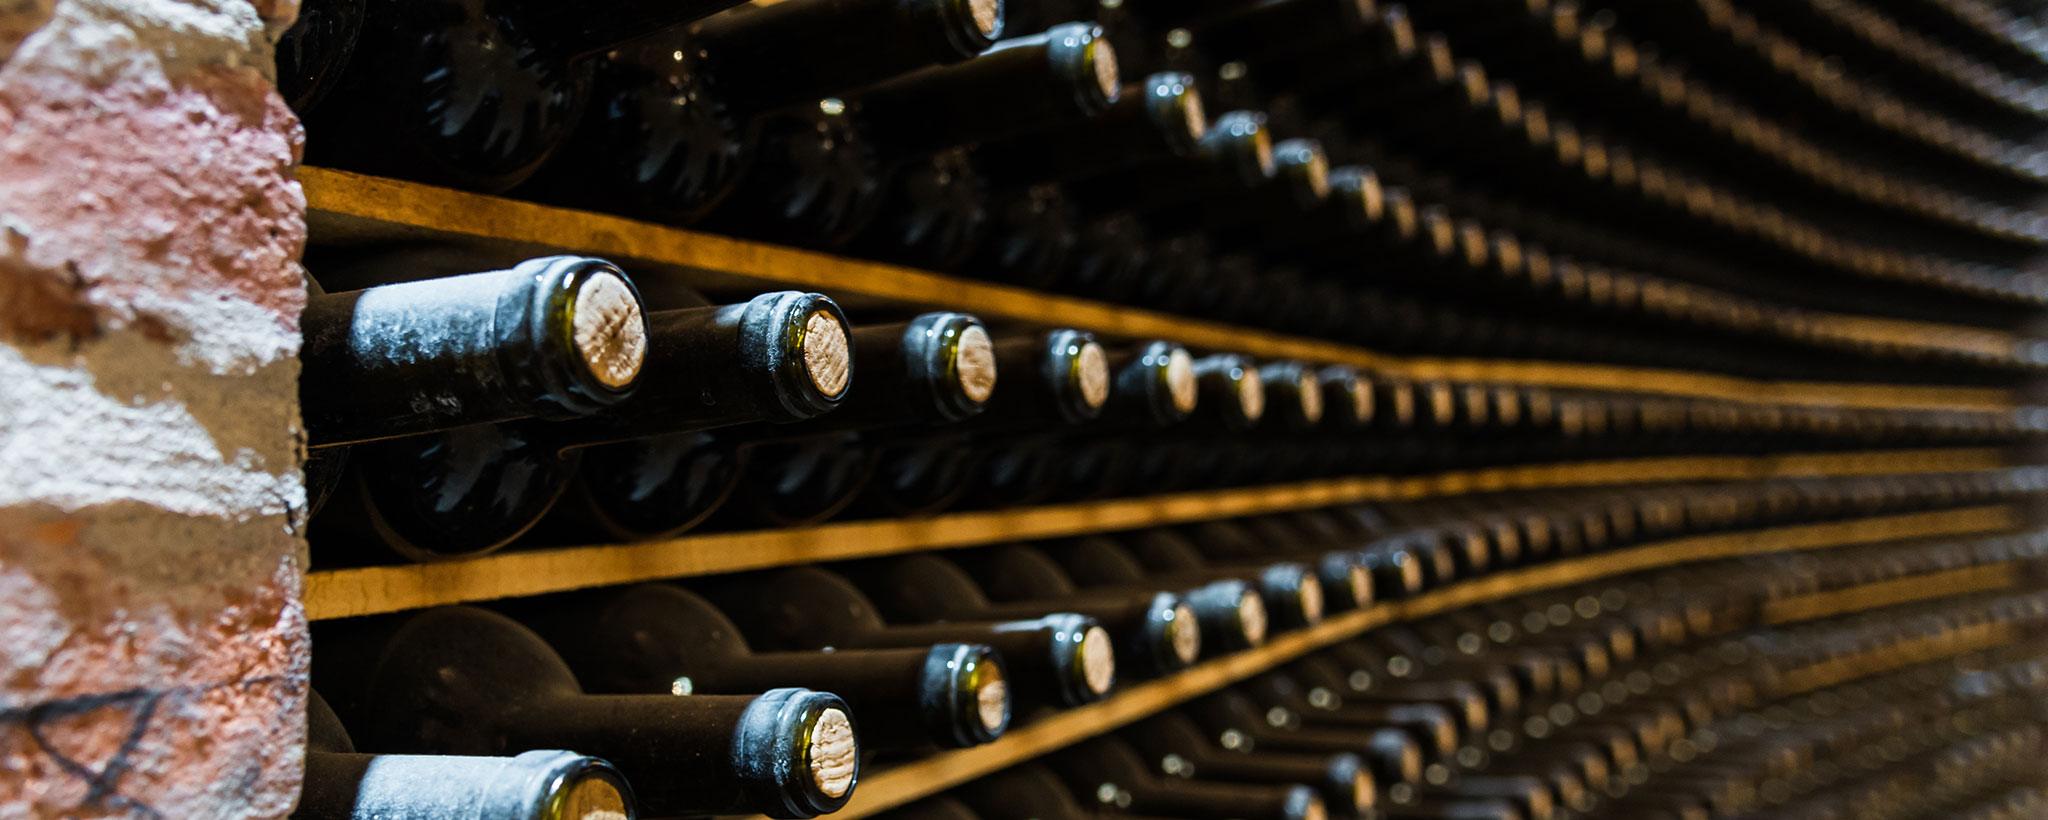 full wall of stored wine bottles